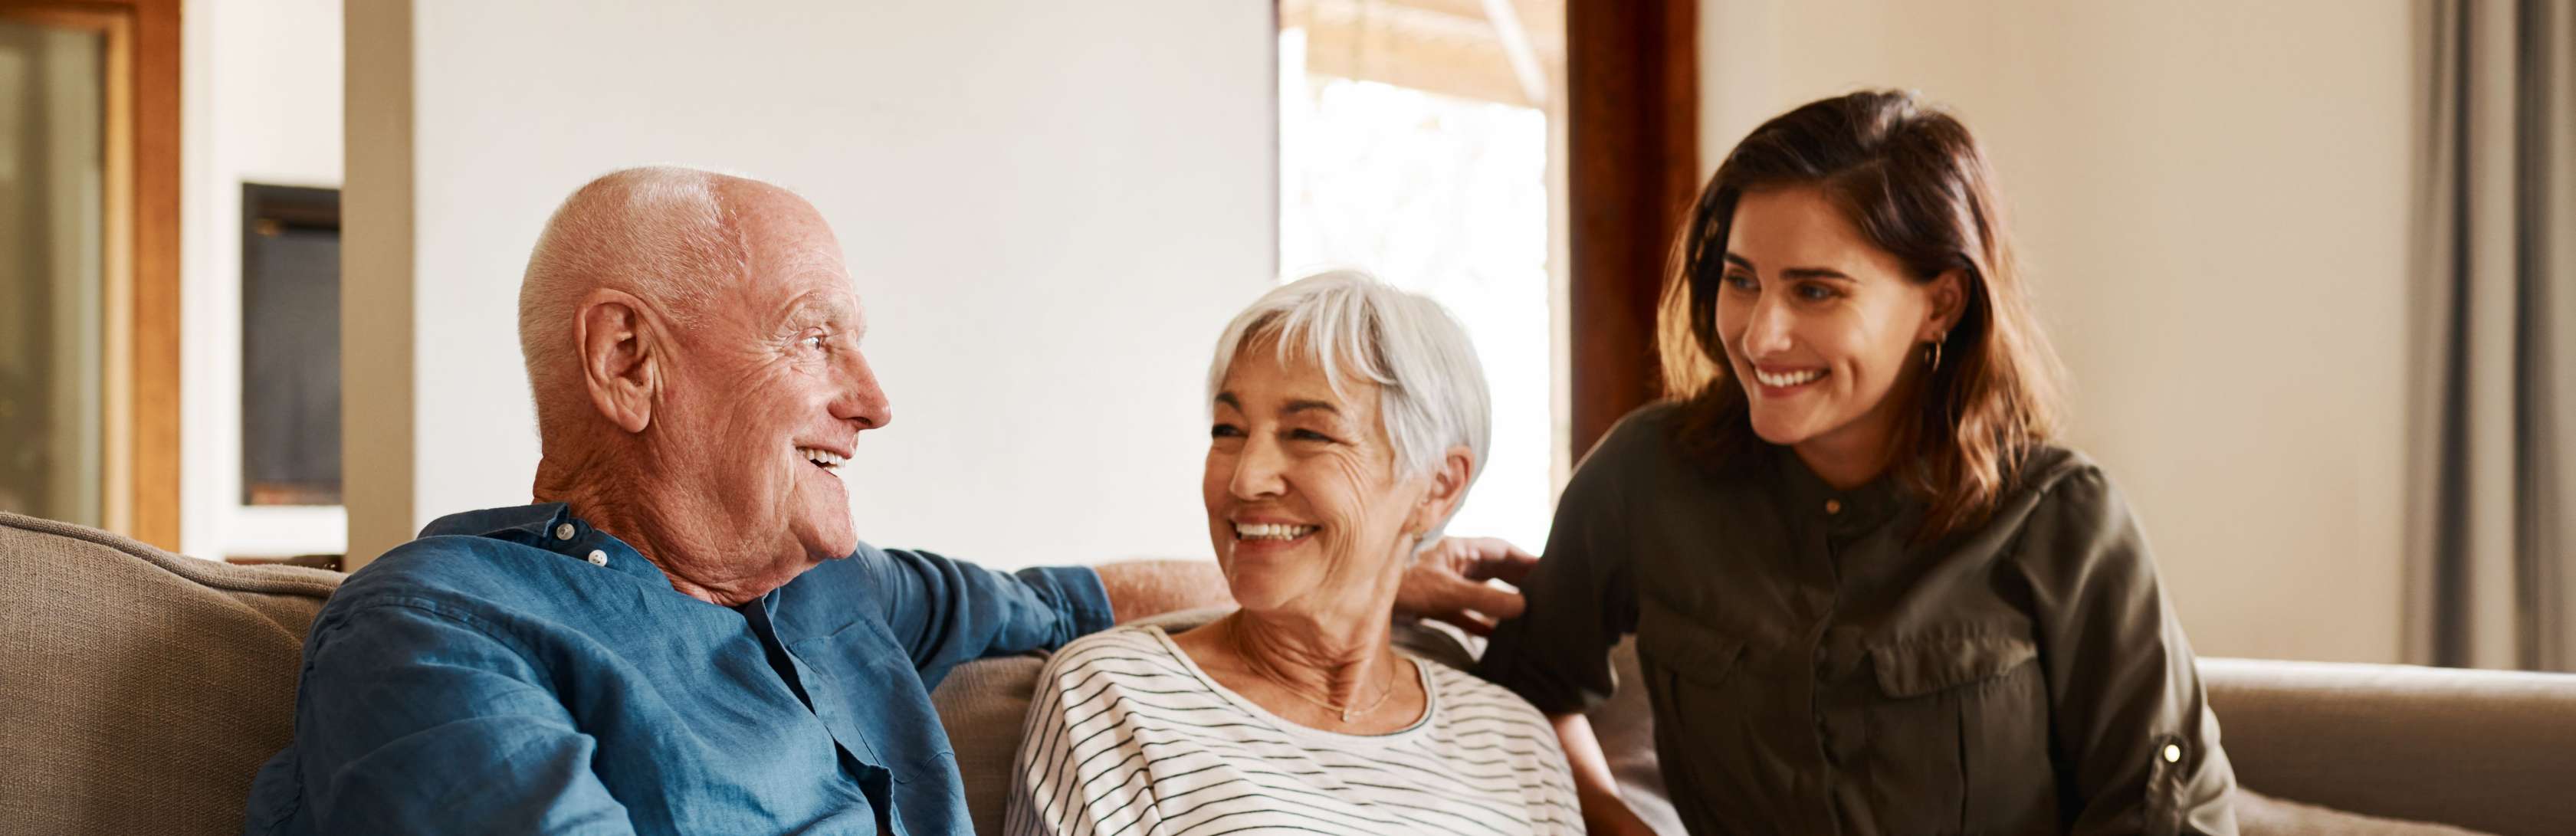 Risikolebensversicherung für Senioren und Rentner: Kann man im Alter eine Risikolebensversicherung abschließen?